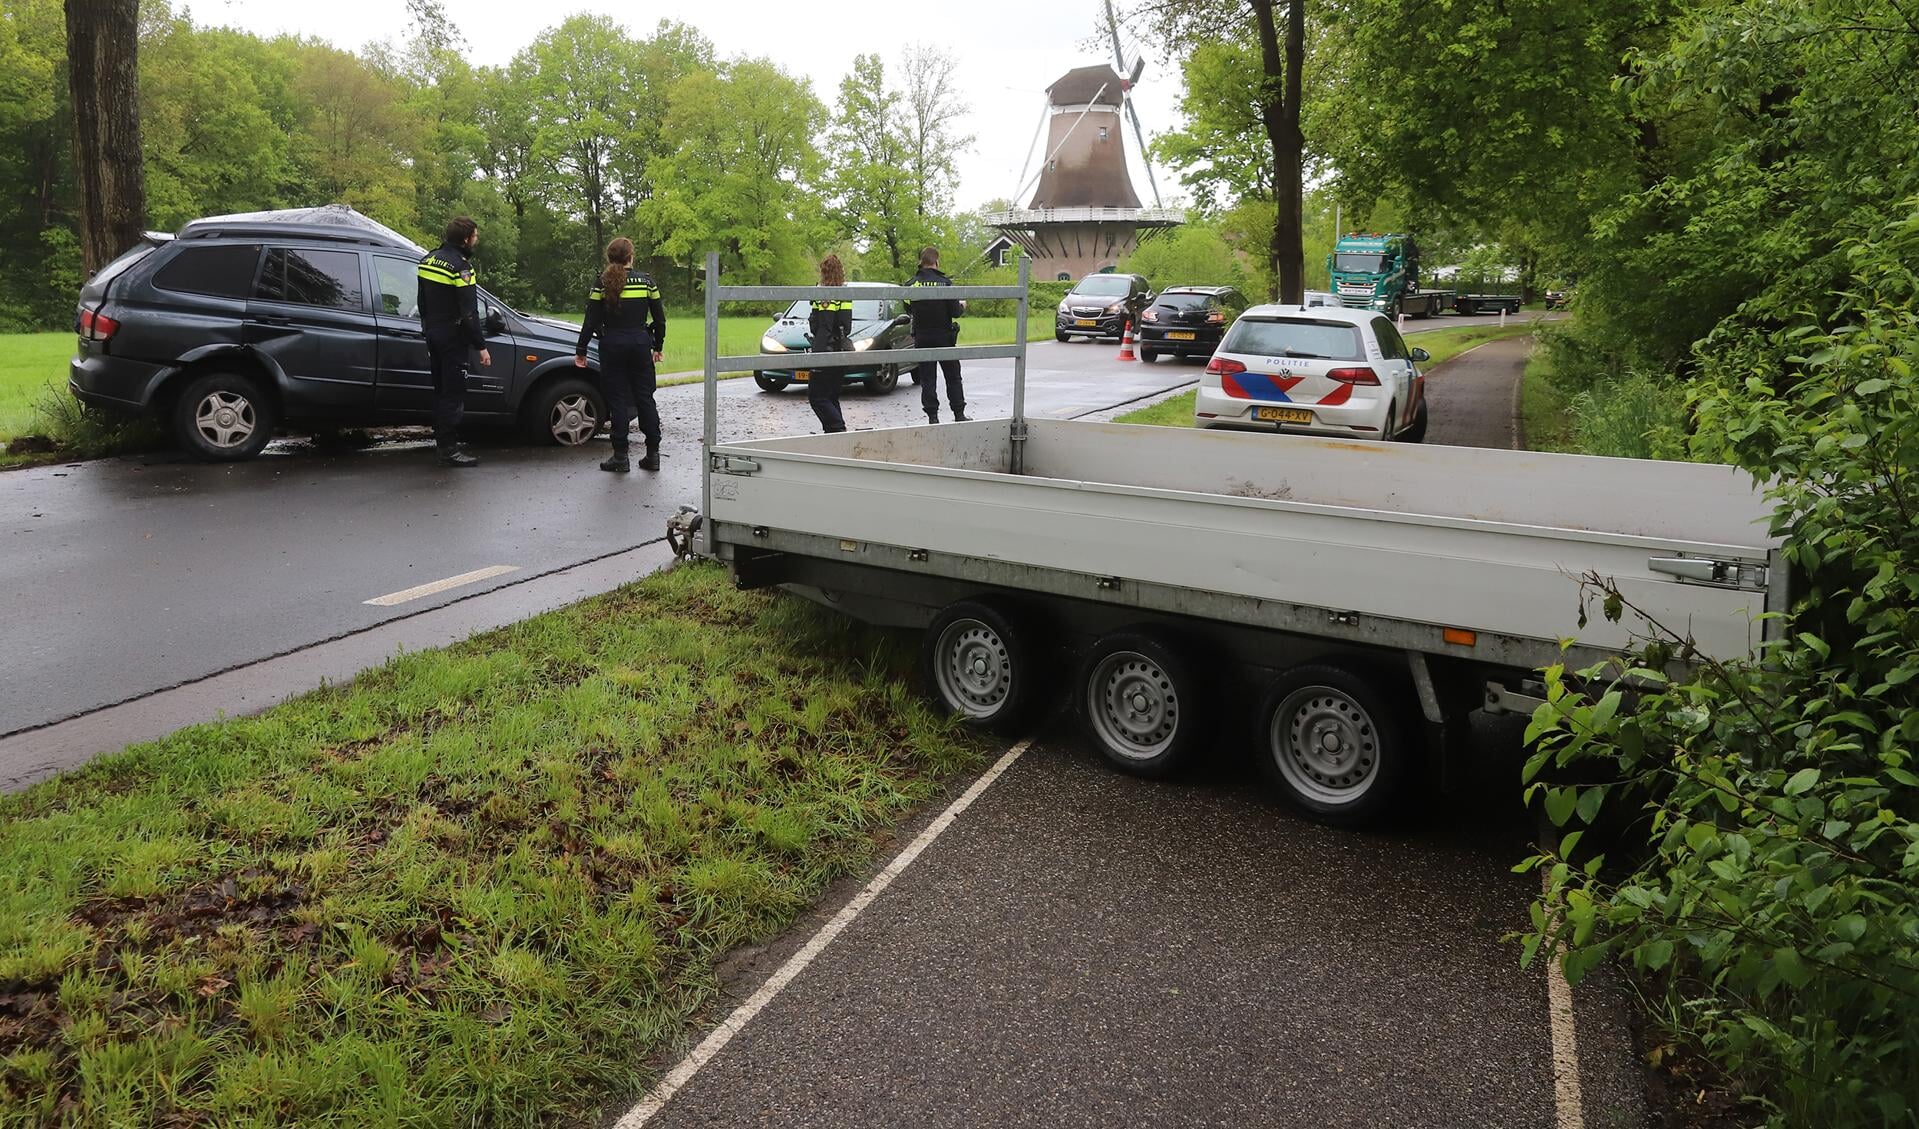 Pidgin transactie Syndicaat Auto met aanhanger botst tegen boom langs Barneveldseweg - StadNijkerk.nl  Nieuws uit de regio Nijkerk